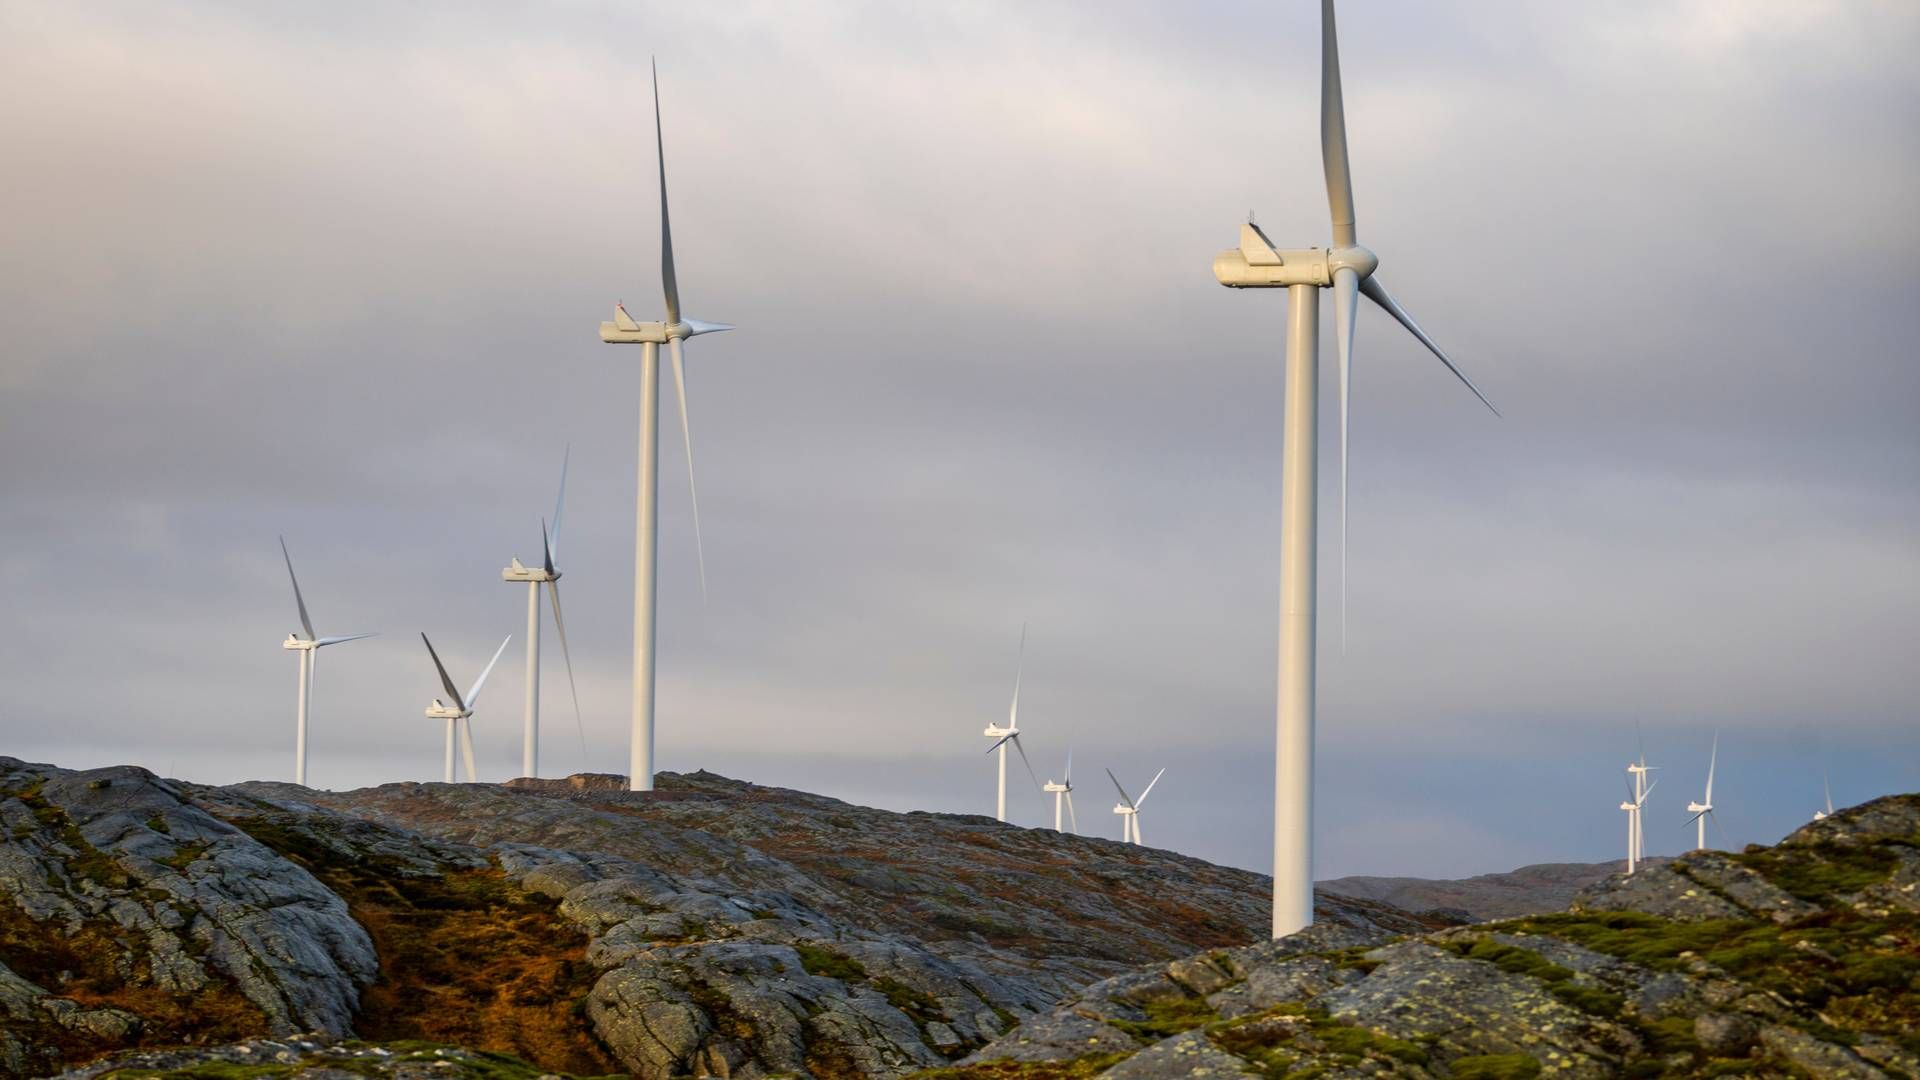 KAN BLI POLITIANMELDT: Storheia vindpark er den største av vindparkene i porteføljen til Fosen Vind, og den andre av vindparkene som ble bygget. Da den ble overført til ordinær drift i februar 2020 var den Norges største med 80 turbiner og en installert effekt på 288 MW. | Foto: Heiko Junge / NTB